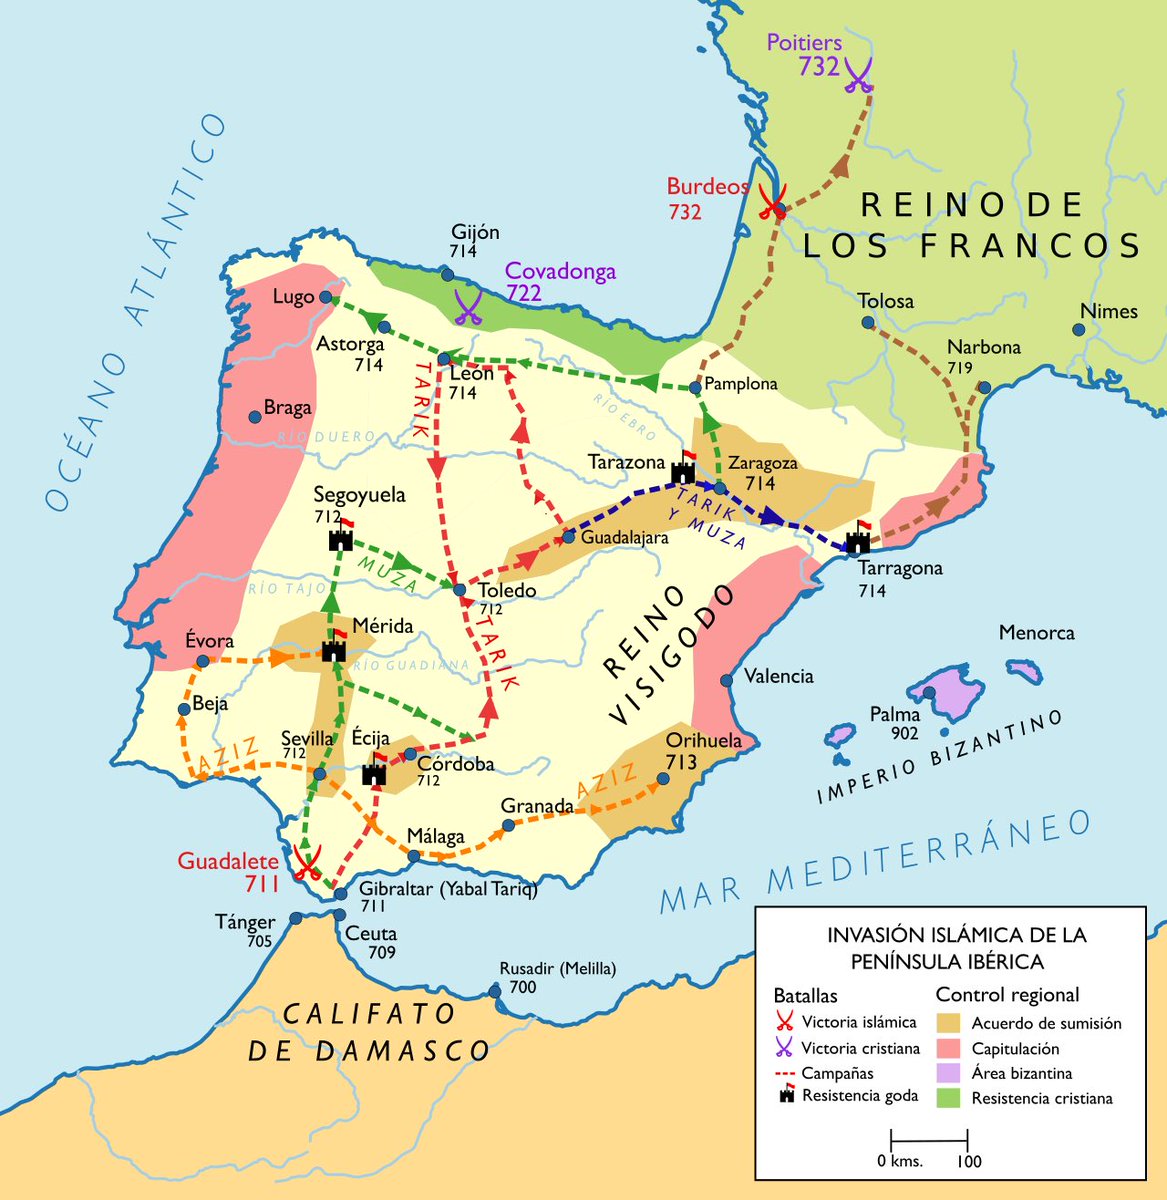 ☪️💥🇪🇸 | #Taldíacomohoy del 711: en la actual España, mientras el rey Don Rodrigo (Roderico), se enfrenta a los rebeldes vascones…

El árabe Táriq ibn Ziyad llega a Tarifa (Cádiz) con más de 10.000 hombres y derrota a las fuerzas de Sancho, sobrino de Rodrigo, comenzando así la